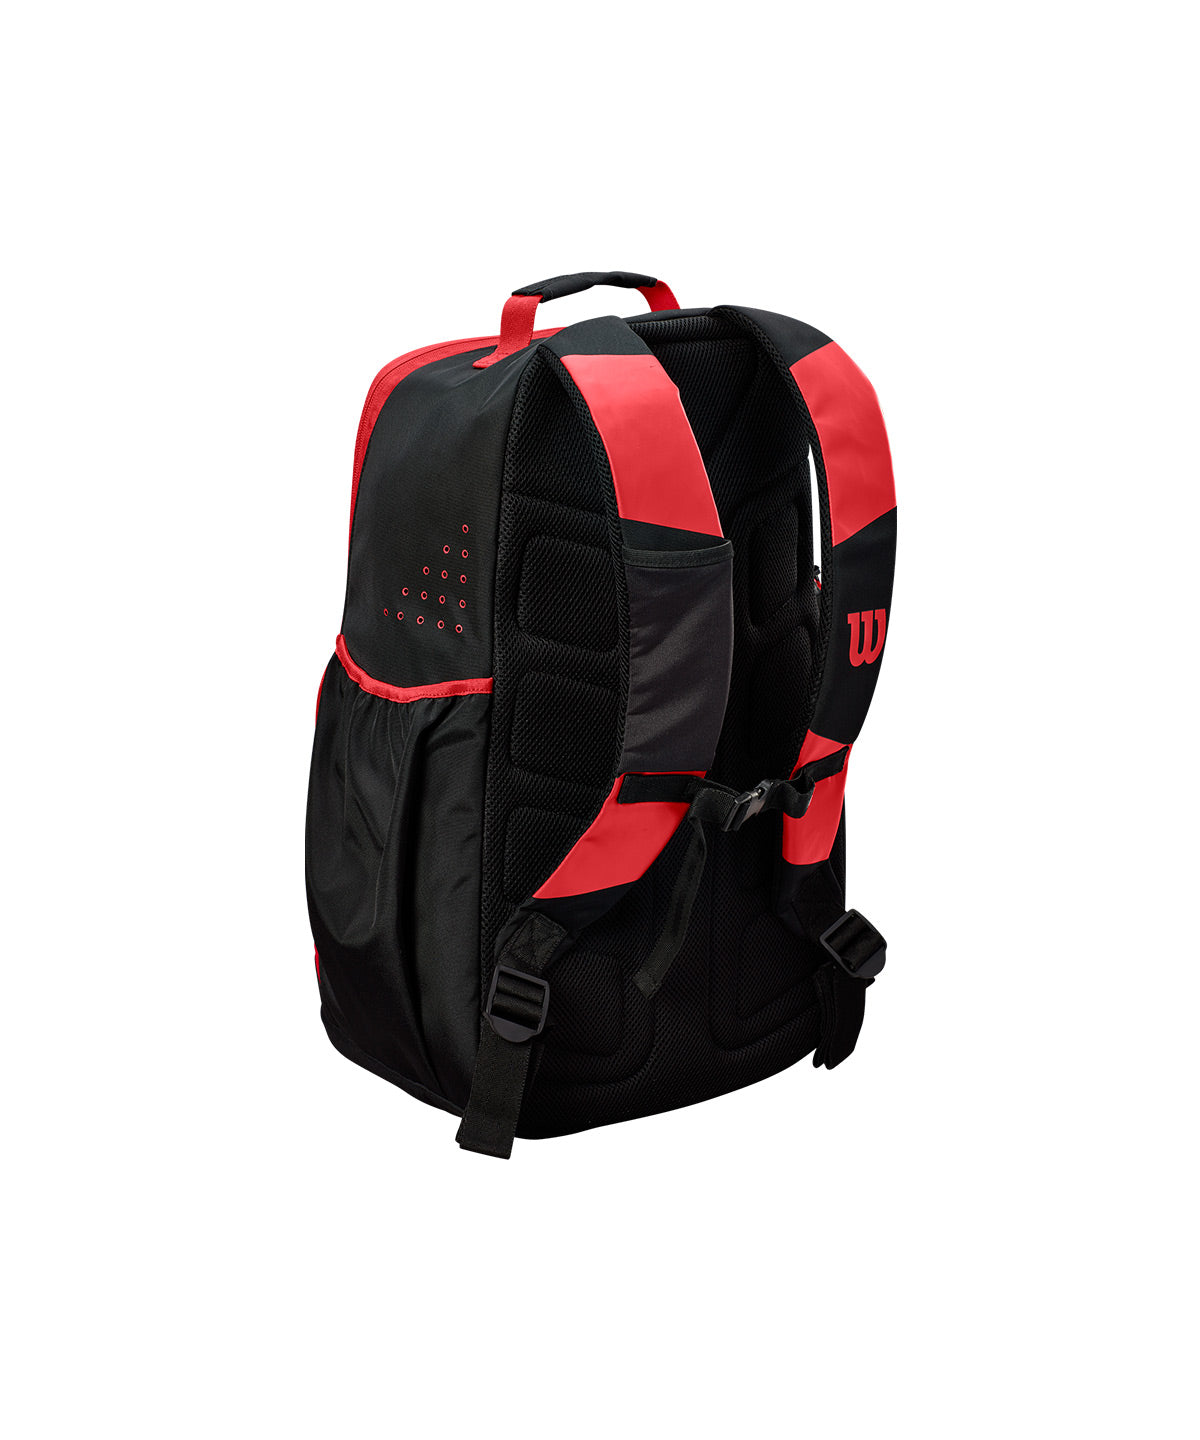 Evolution Player Backpack